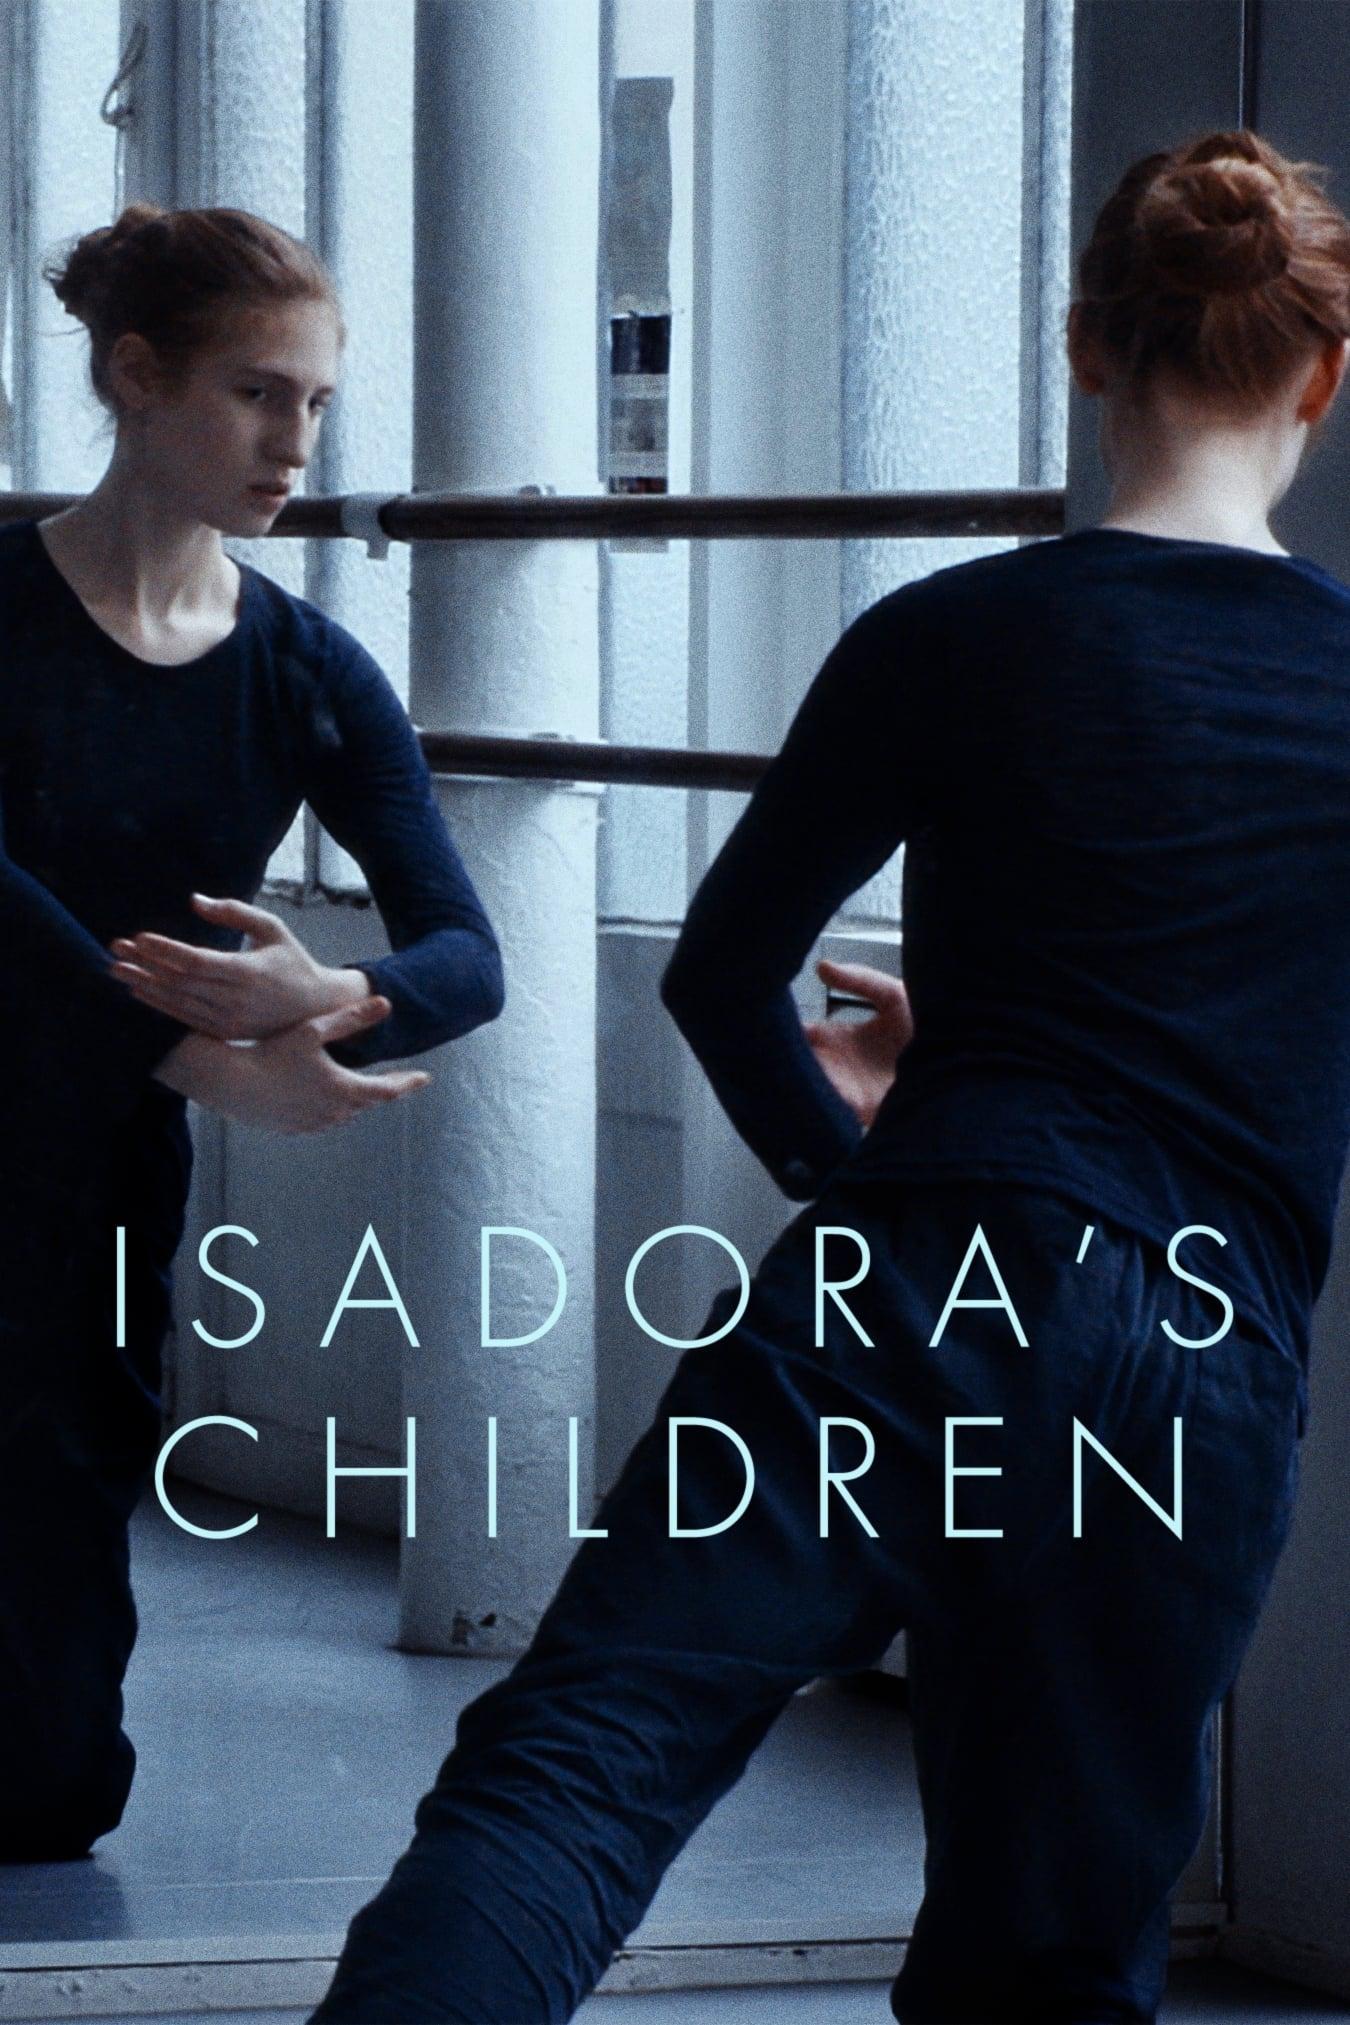 Isadora's Children poster